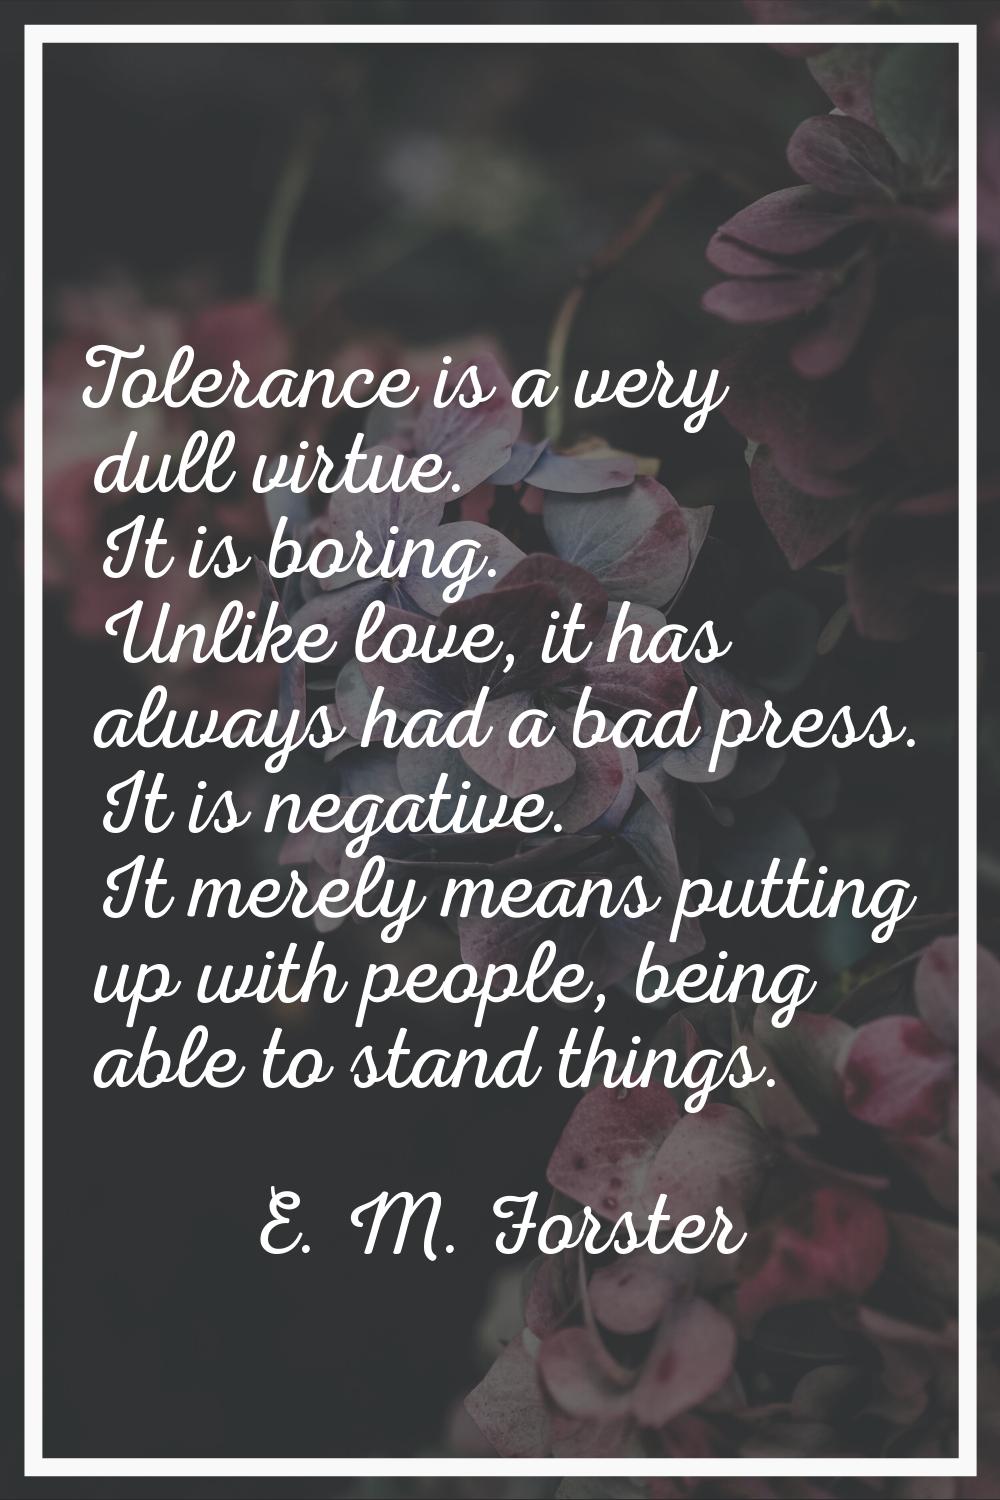 Tolerance is a very dull virtue. It is boring. Unlike love, it has always had a bad press. It is ne